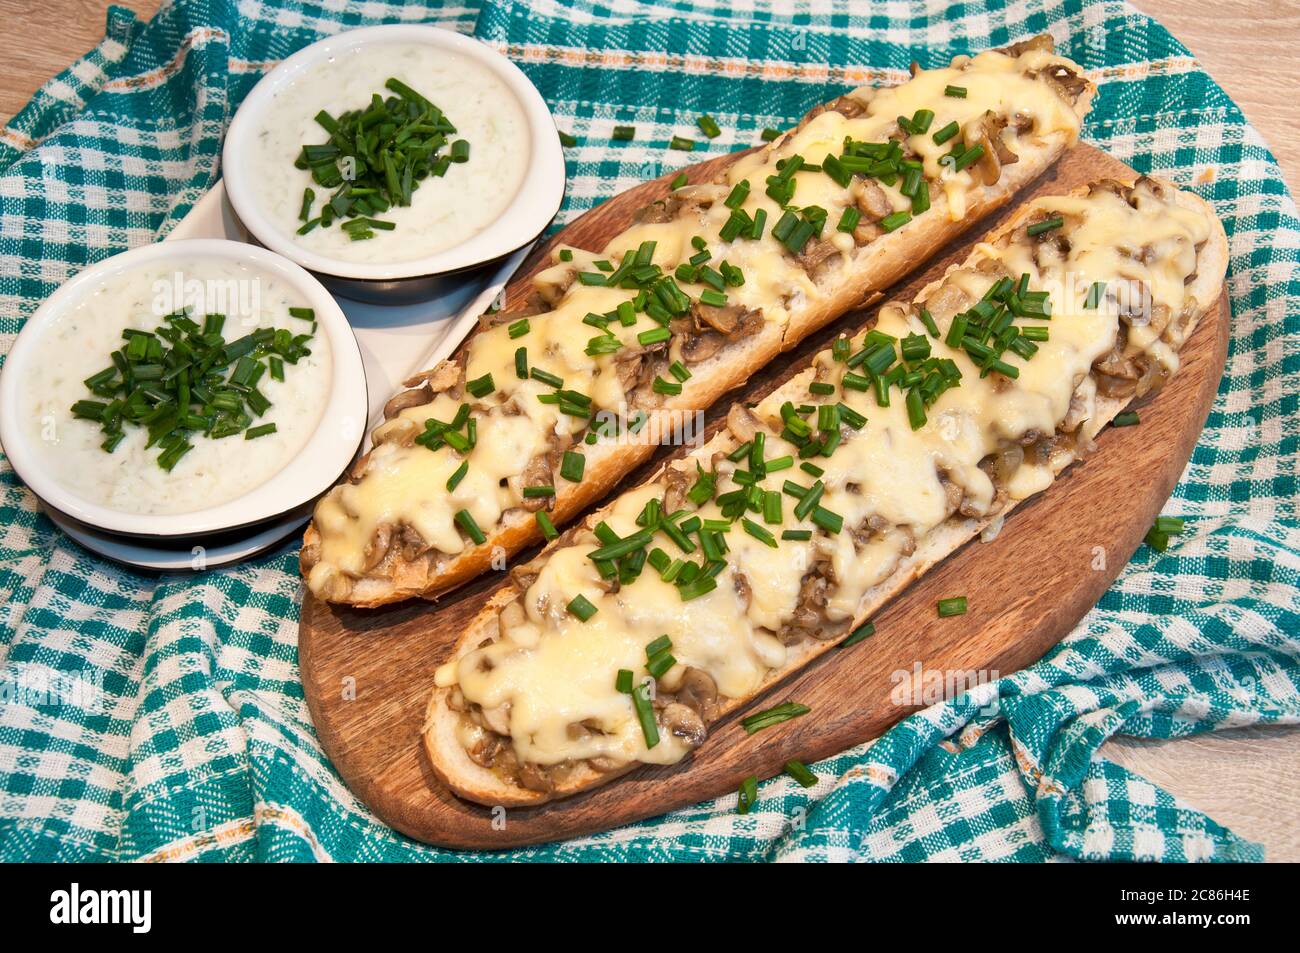 casseruola con formaggio e funghi cosparsa di erba cipollina fresca con salsa tzatziki Foto Stock